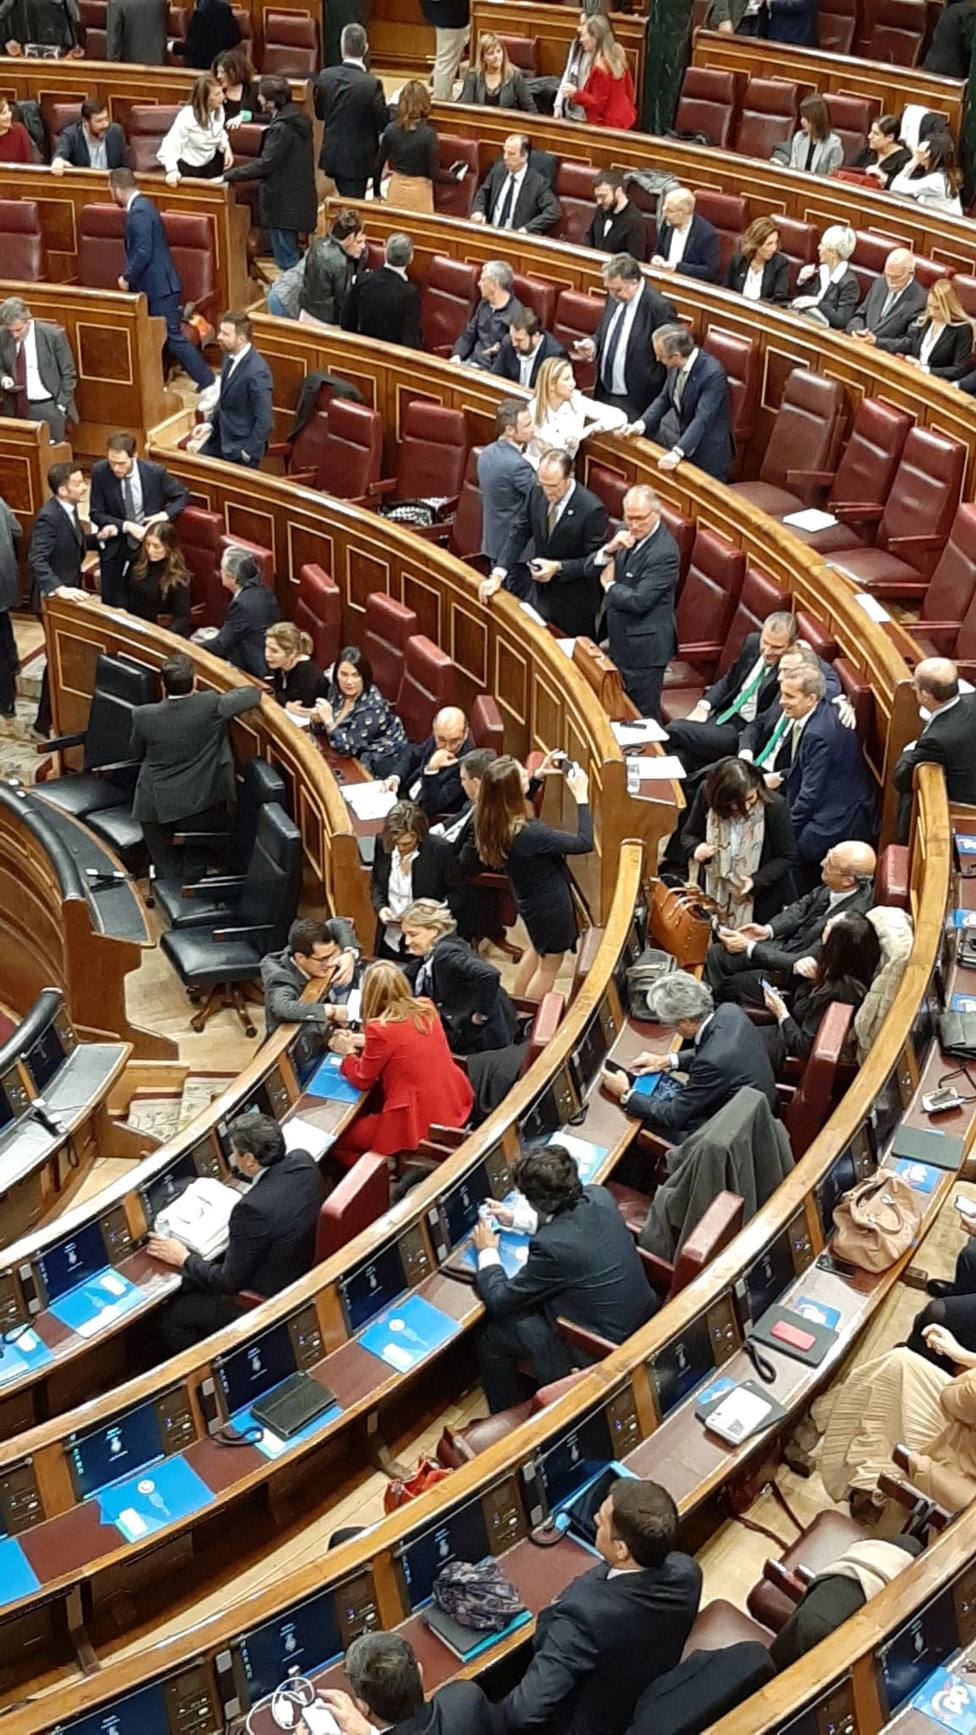 Madrugones y discusiones entre diputados para ocupar los escaños del hemiciclo del Congreso en su sesión constitutiva